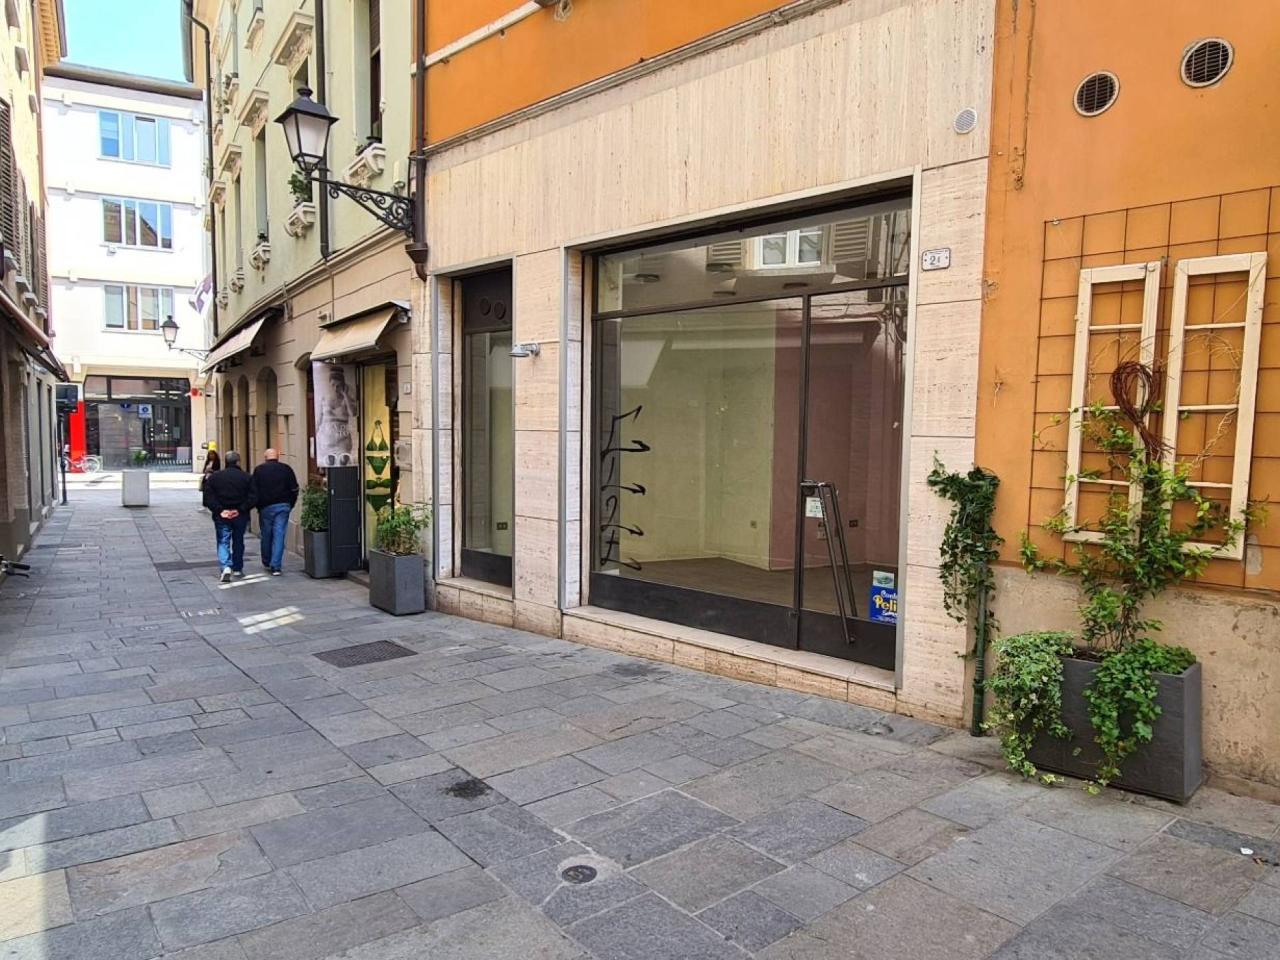 Negozio in affitto a Reggio Emilia